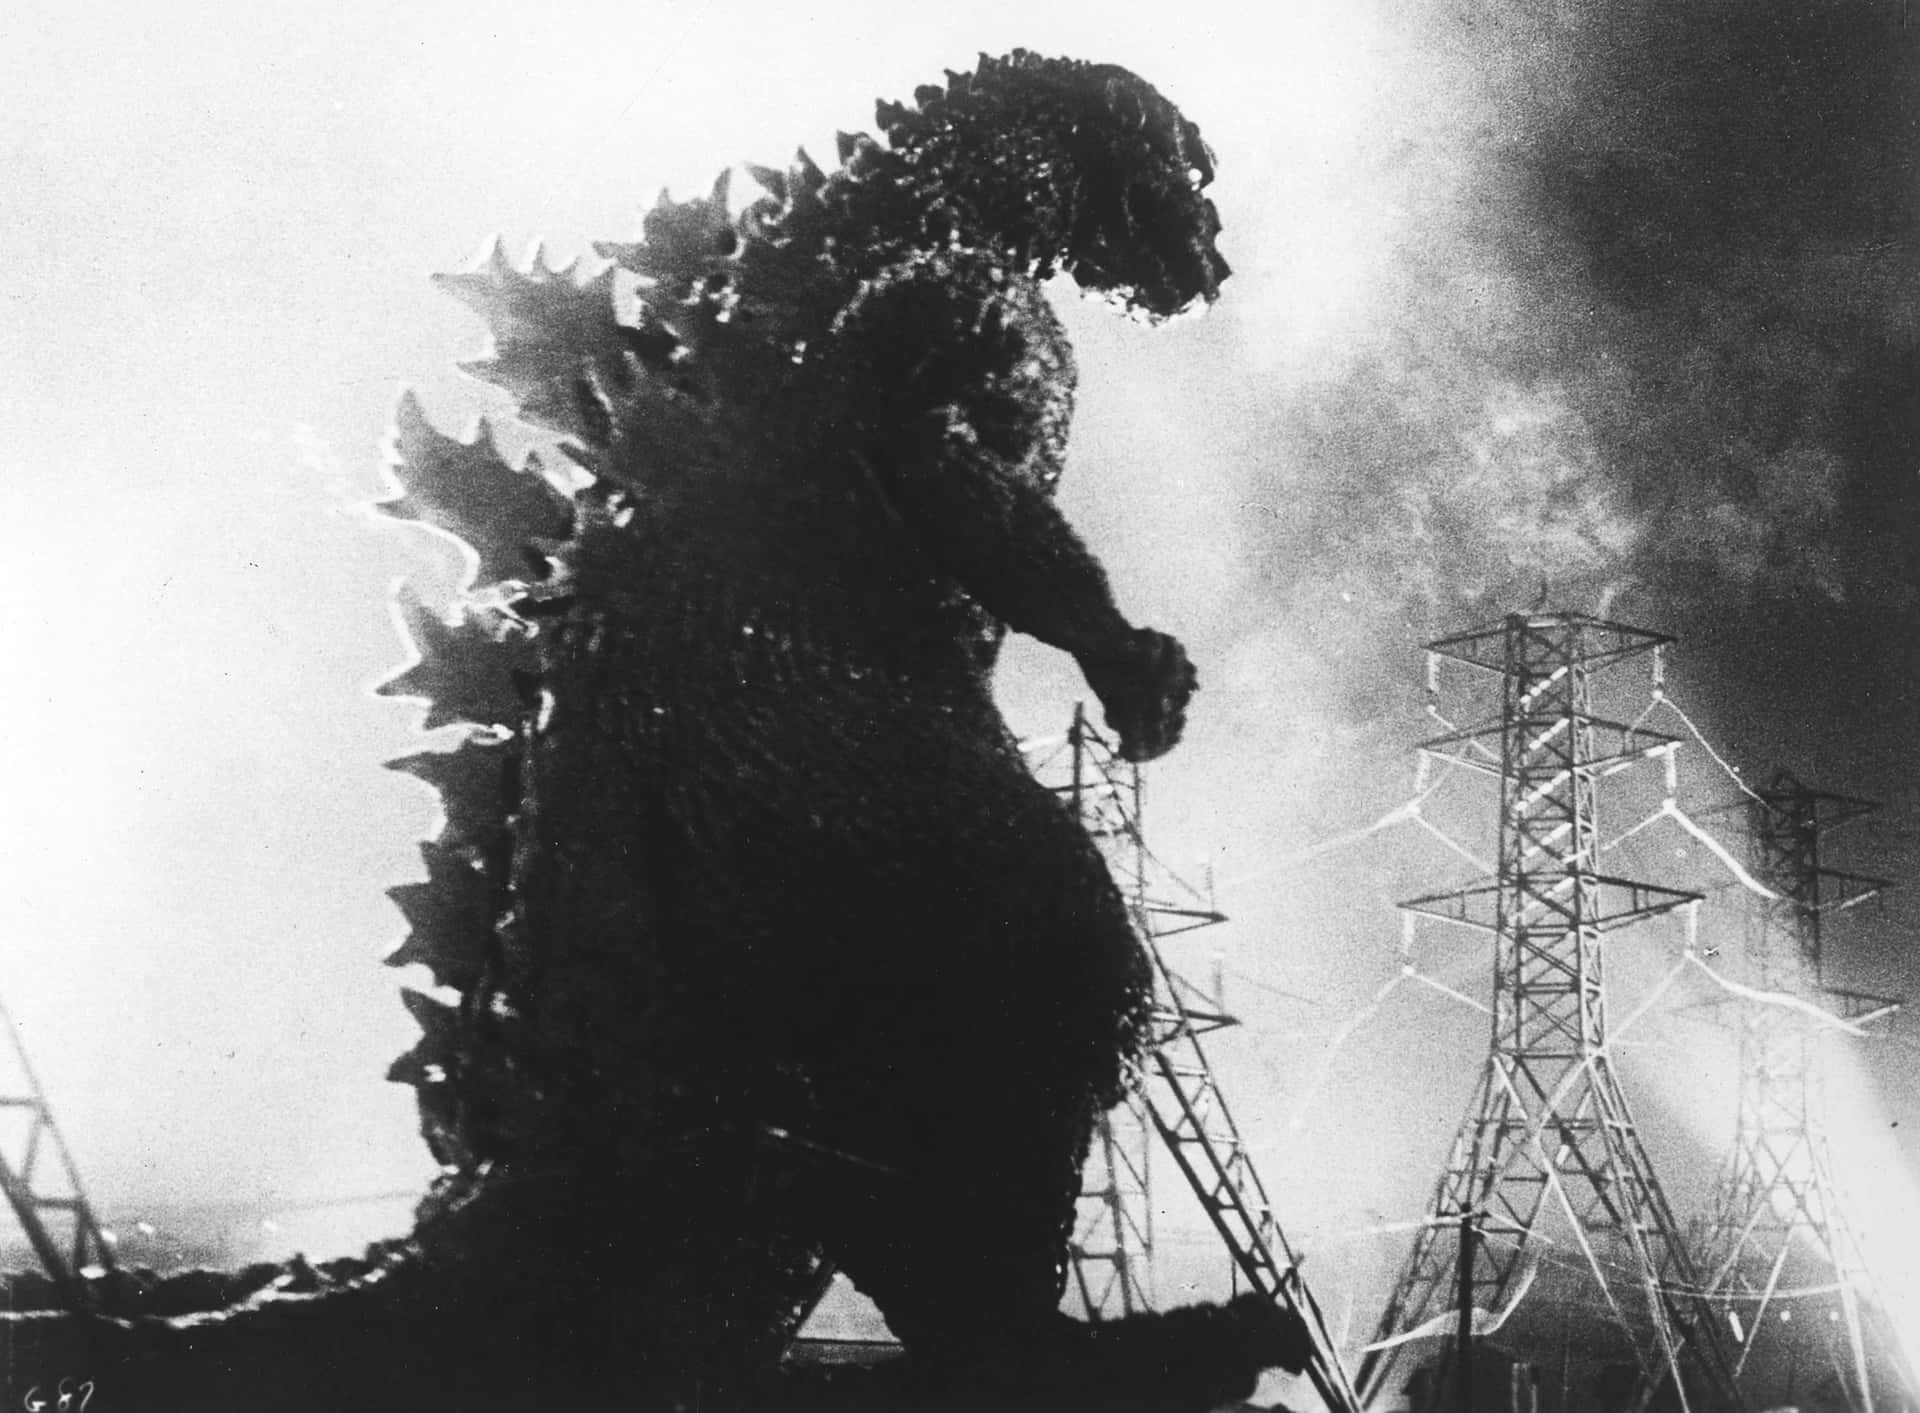 Captivating Godzilla 1954 Vintage Movie Poster Wallpaper